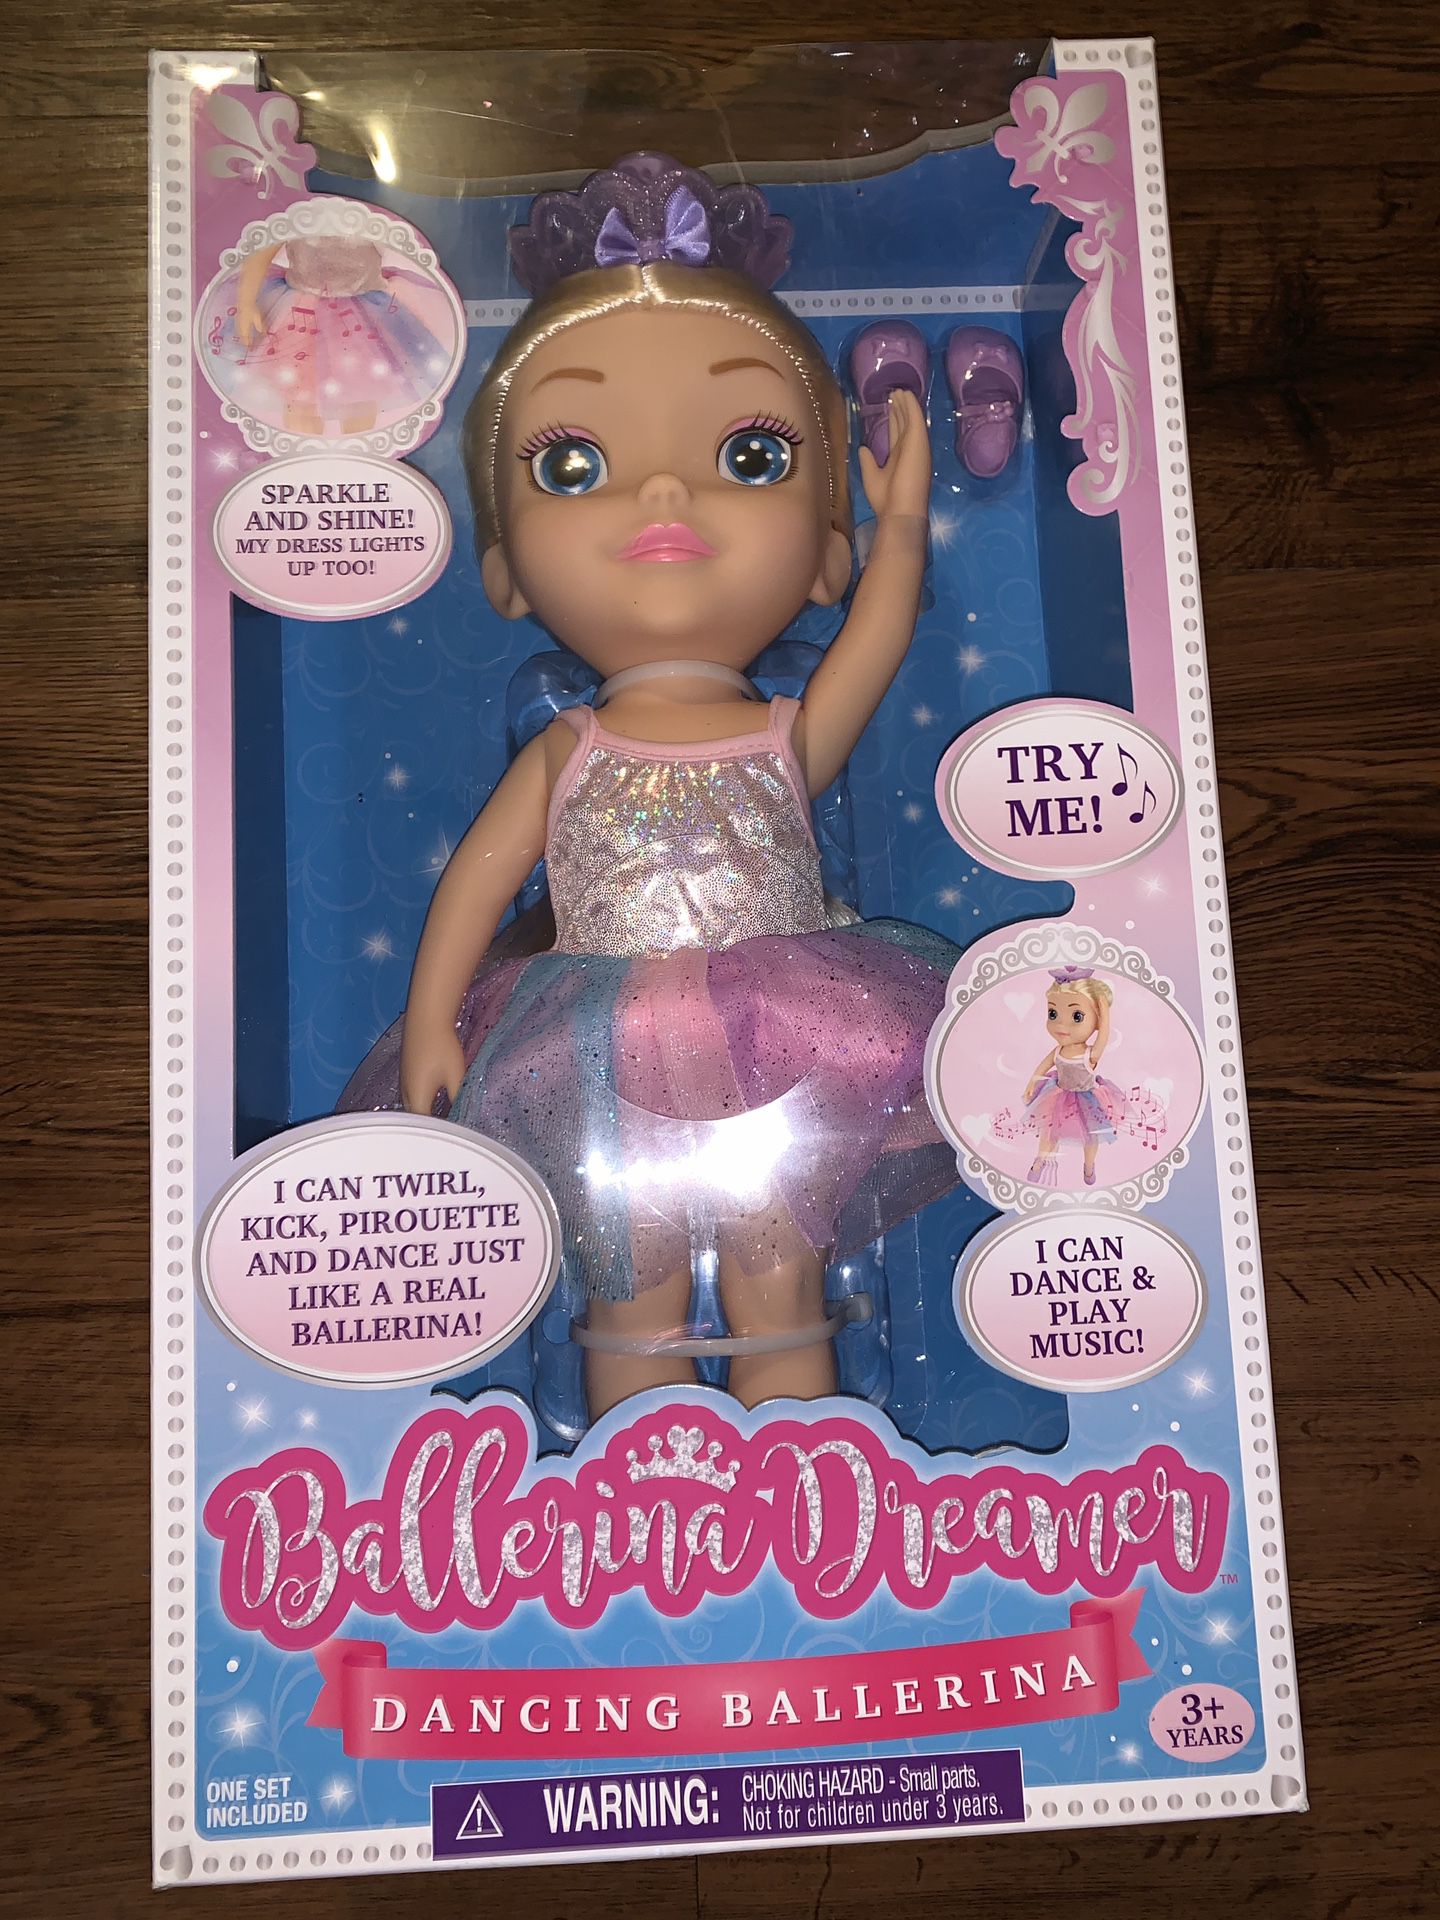 Ballerina Dreamer